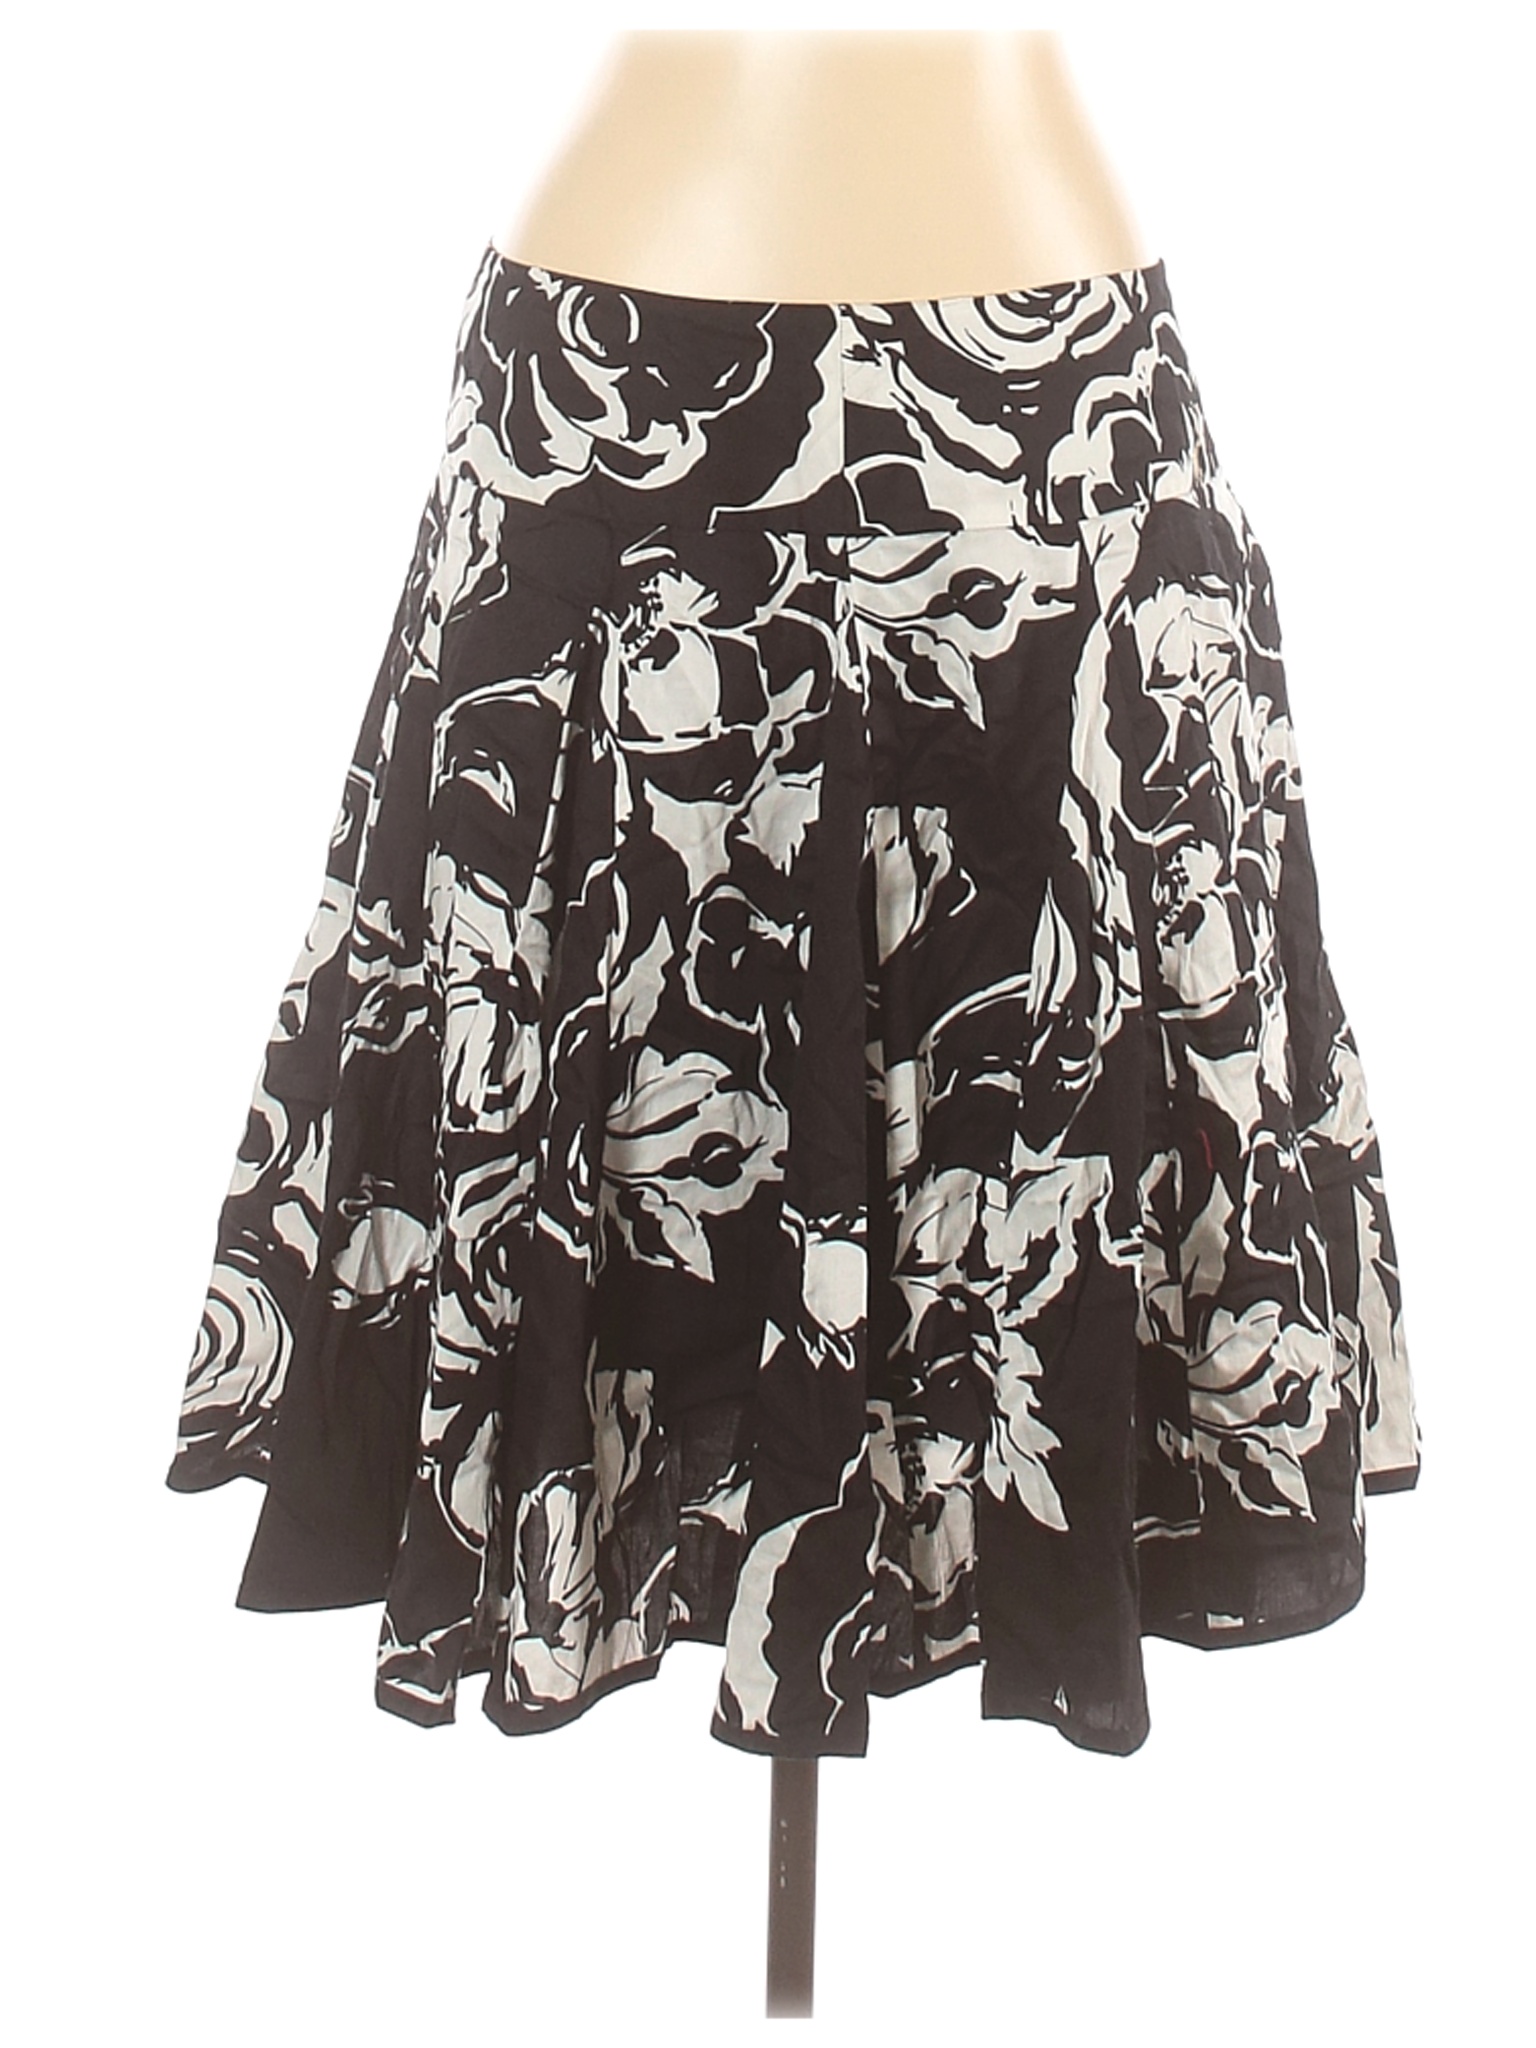 Lauren by Ralph Lauren Women Black Casual Skirt 12 | eBay